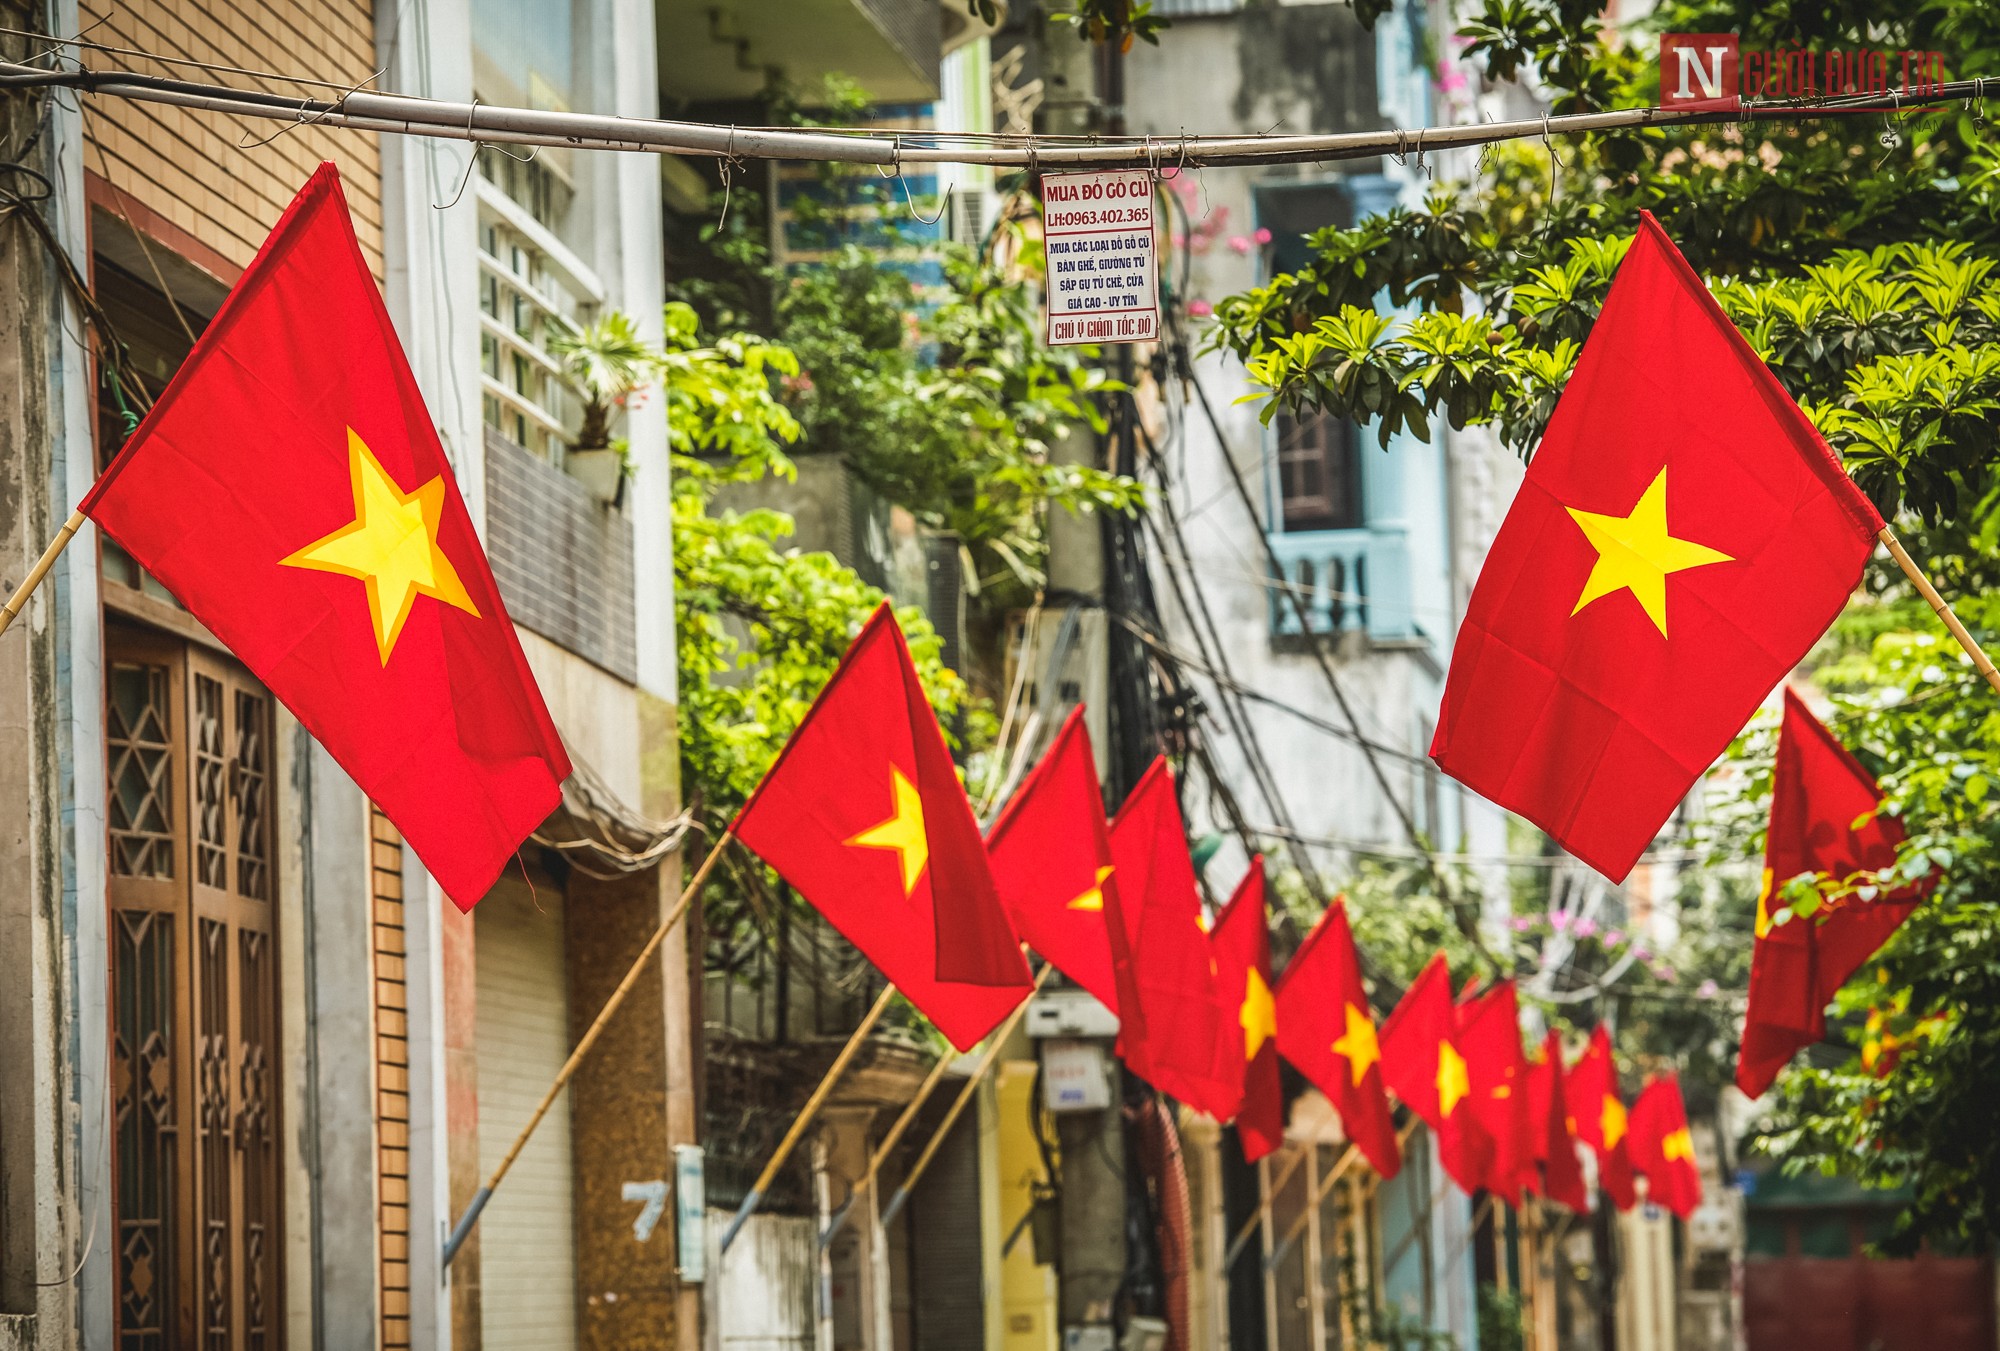 Treo cờ tổ quốc: Treo cờ tổ quốc là niềm tự hào của mỗi người Việt Nam về đất nước và dân tộc. Hãy cùng xem những hình ảnh đẹp và ý nghĩa về việc treo cờ tổ quốc để cảm nhận tình cảm và lòng yêu nước của chúng ta.